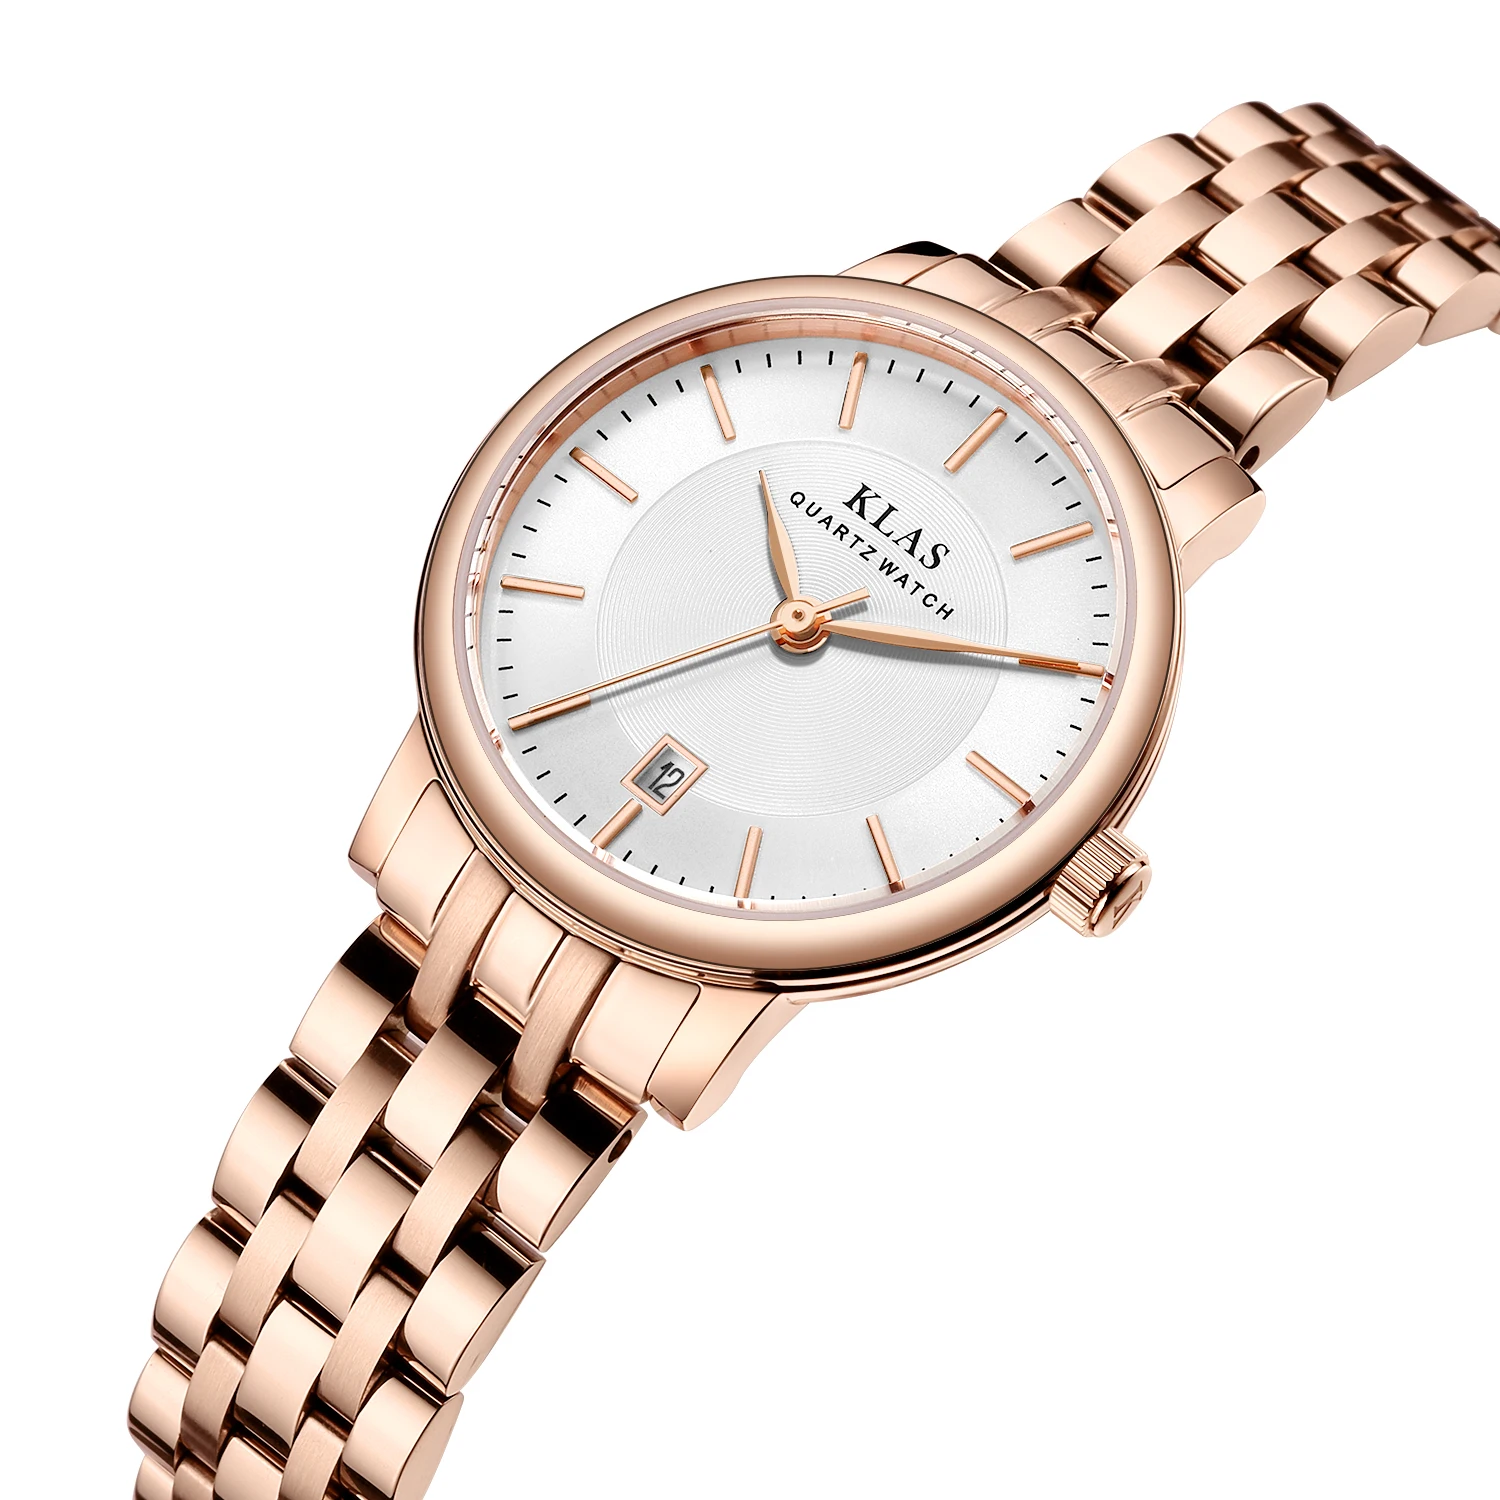 Rose Gold Stainless Steel Dial Watch with Quartz Watch Brand Luxury Fashion Girls Watch KLAS brand часы женские бренд